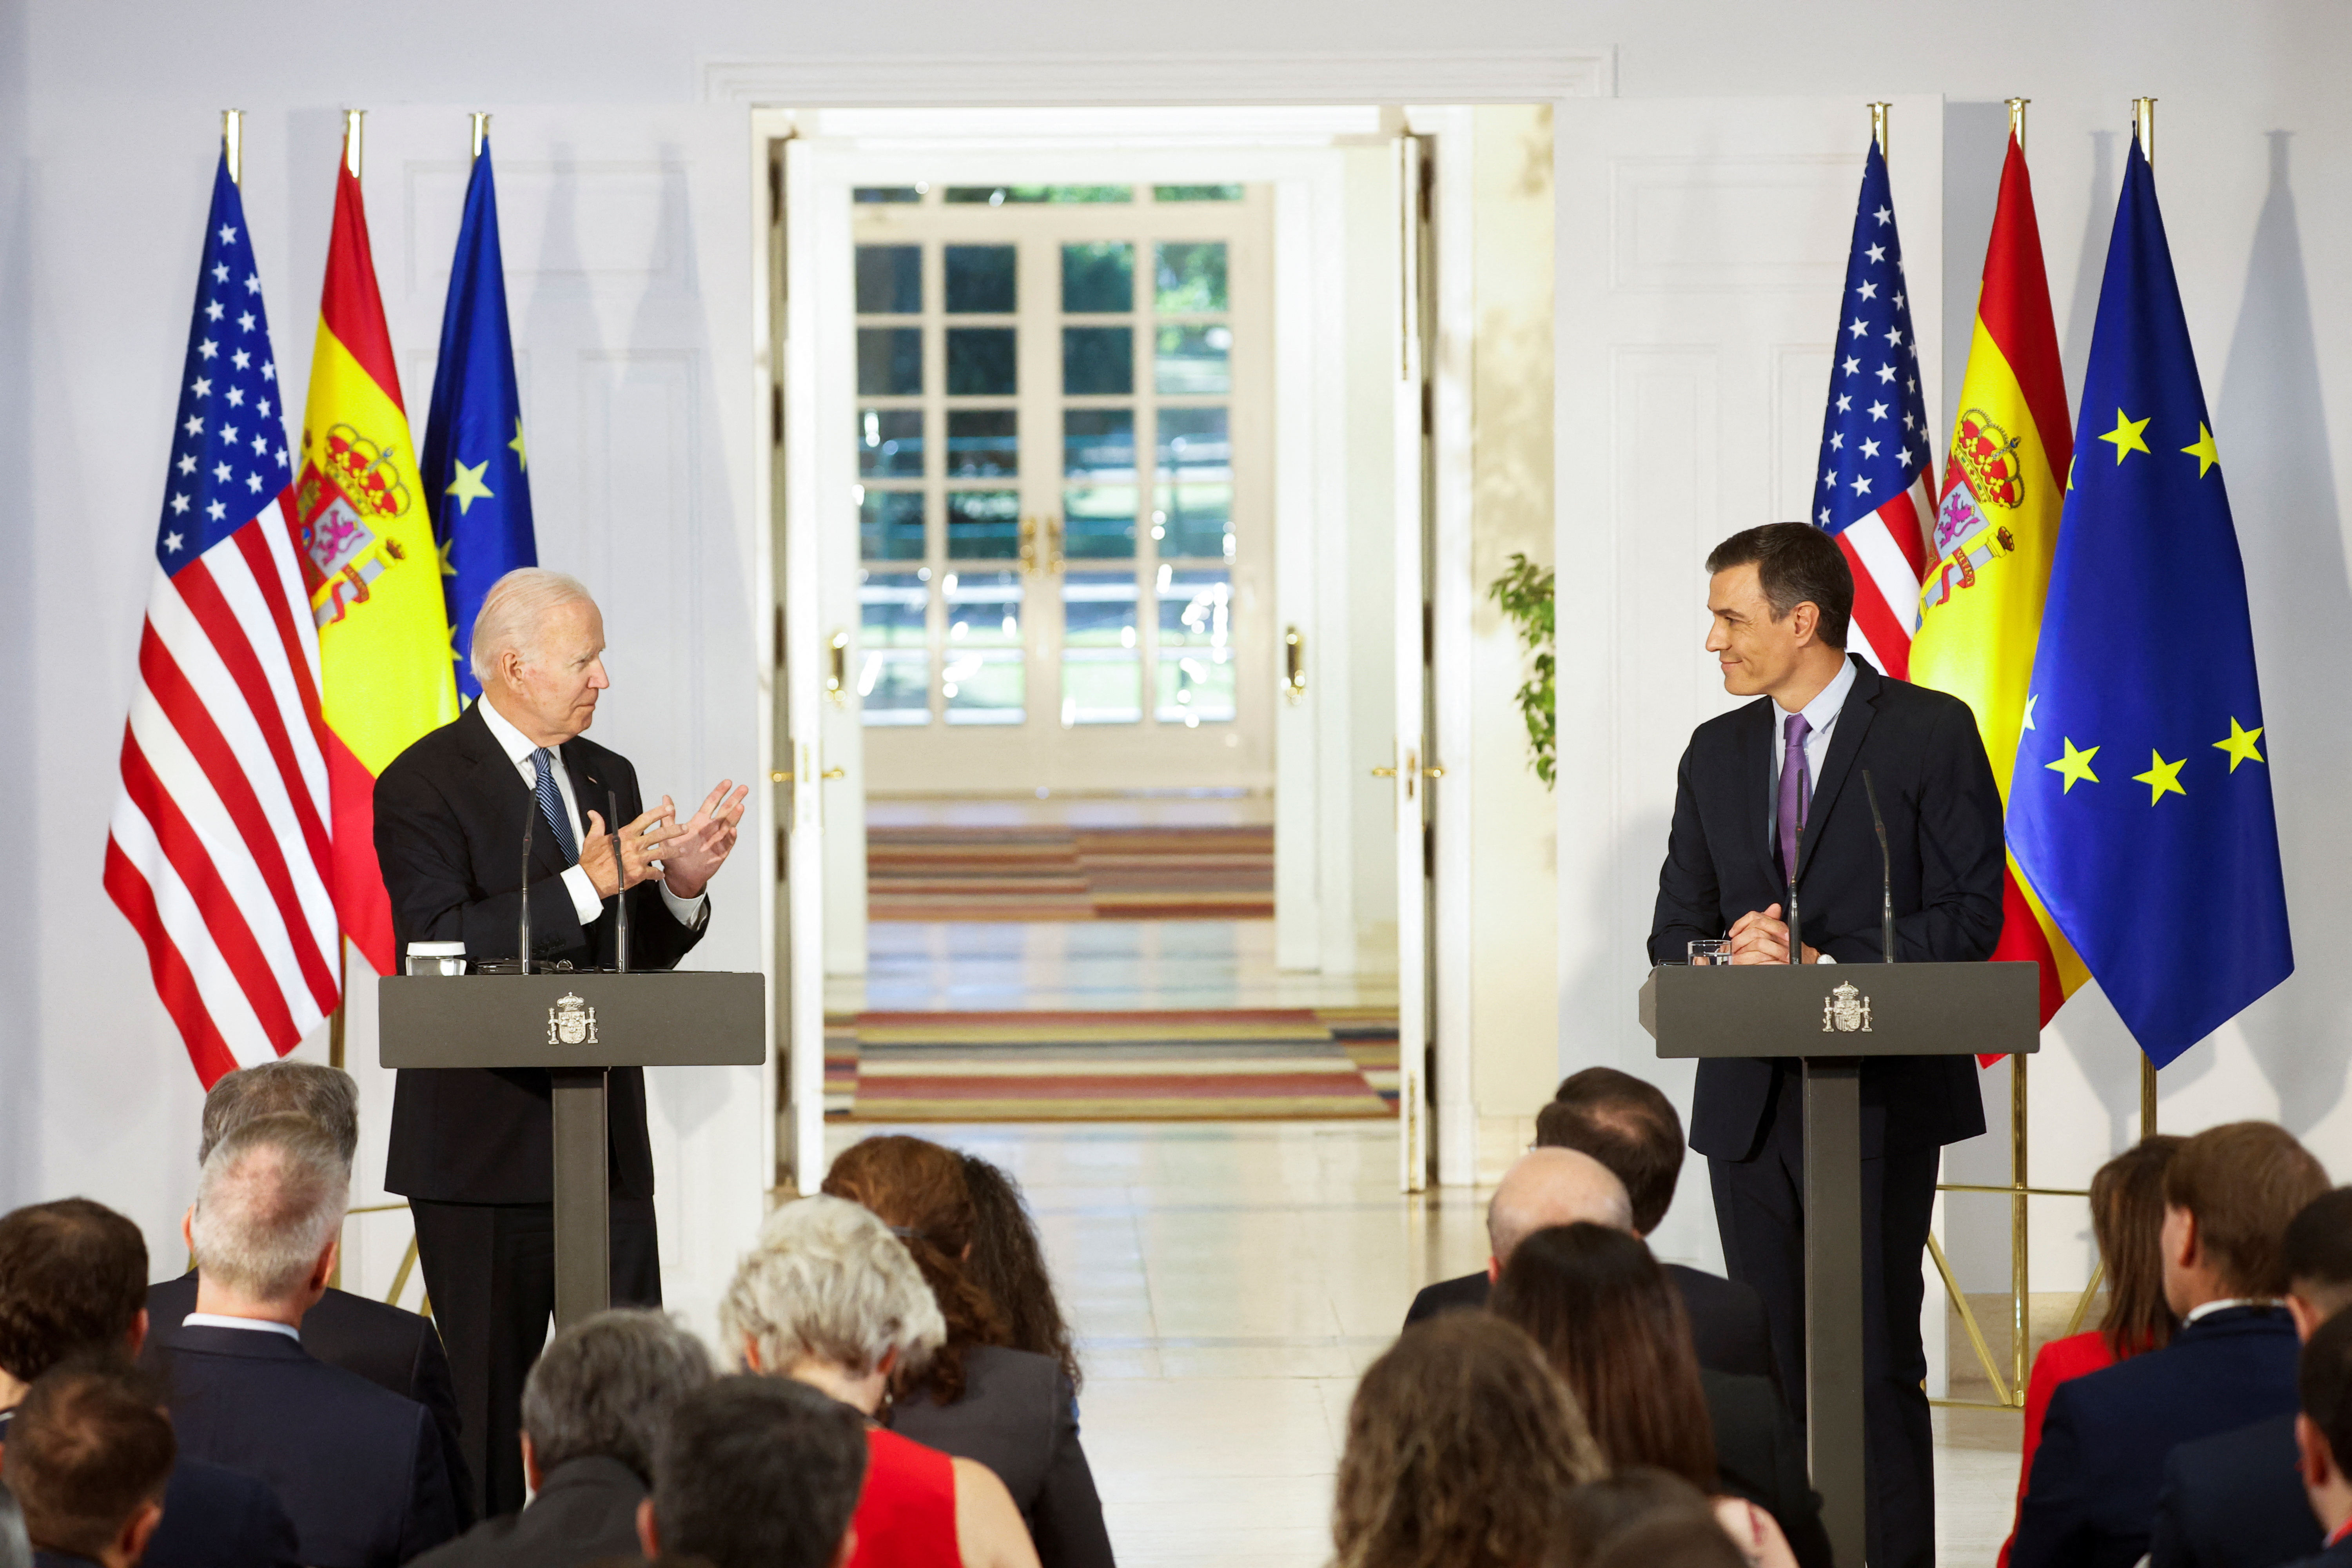 El presidente del gobierno español, Pedro Sanchez, recibe en el Palacio de la Moncloa al presidente estadounidense, Joe Biden, en el marco de la cumbre de la OTAN. REUTERS/Juan Medina